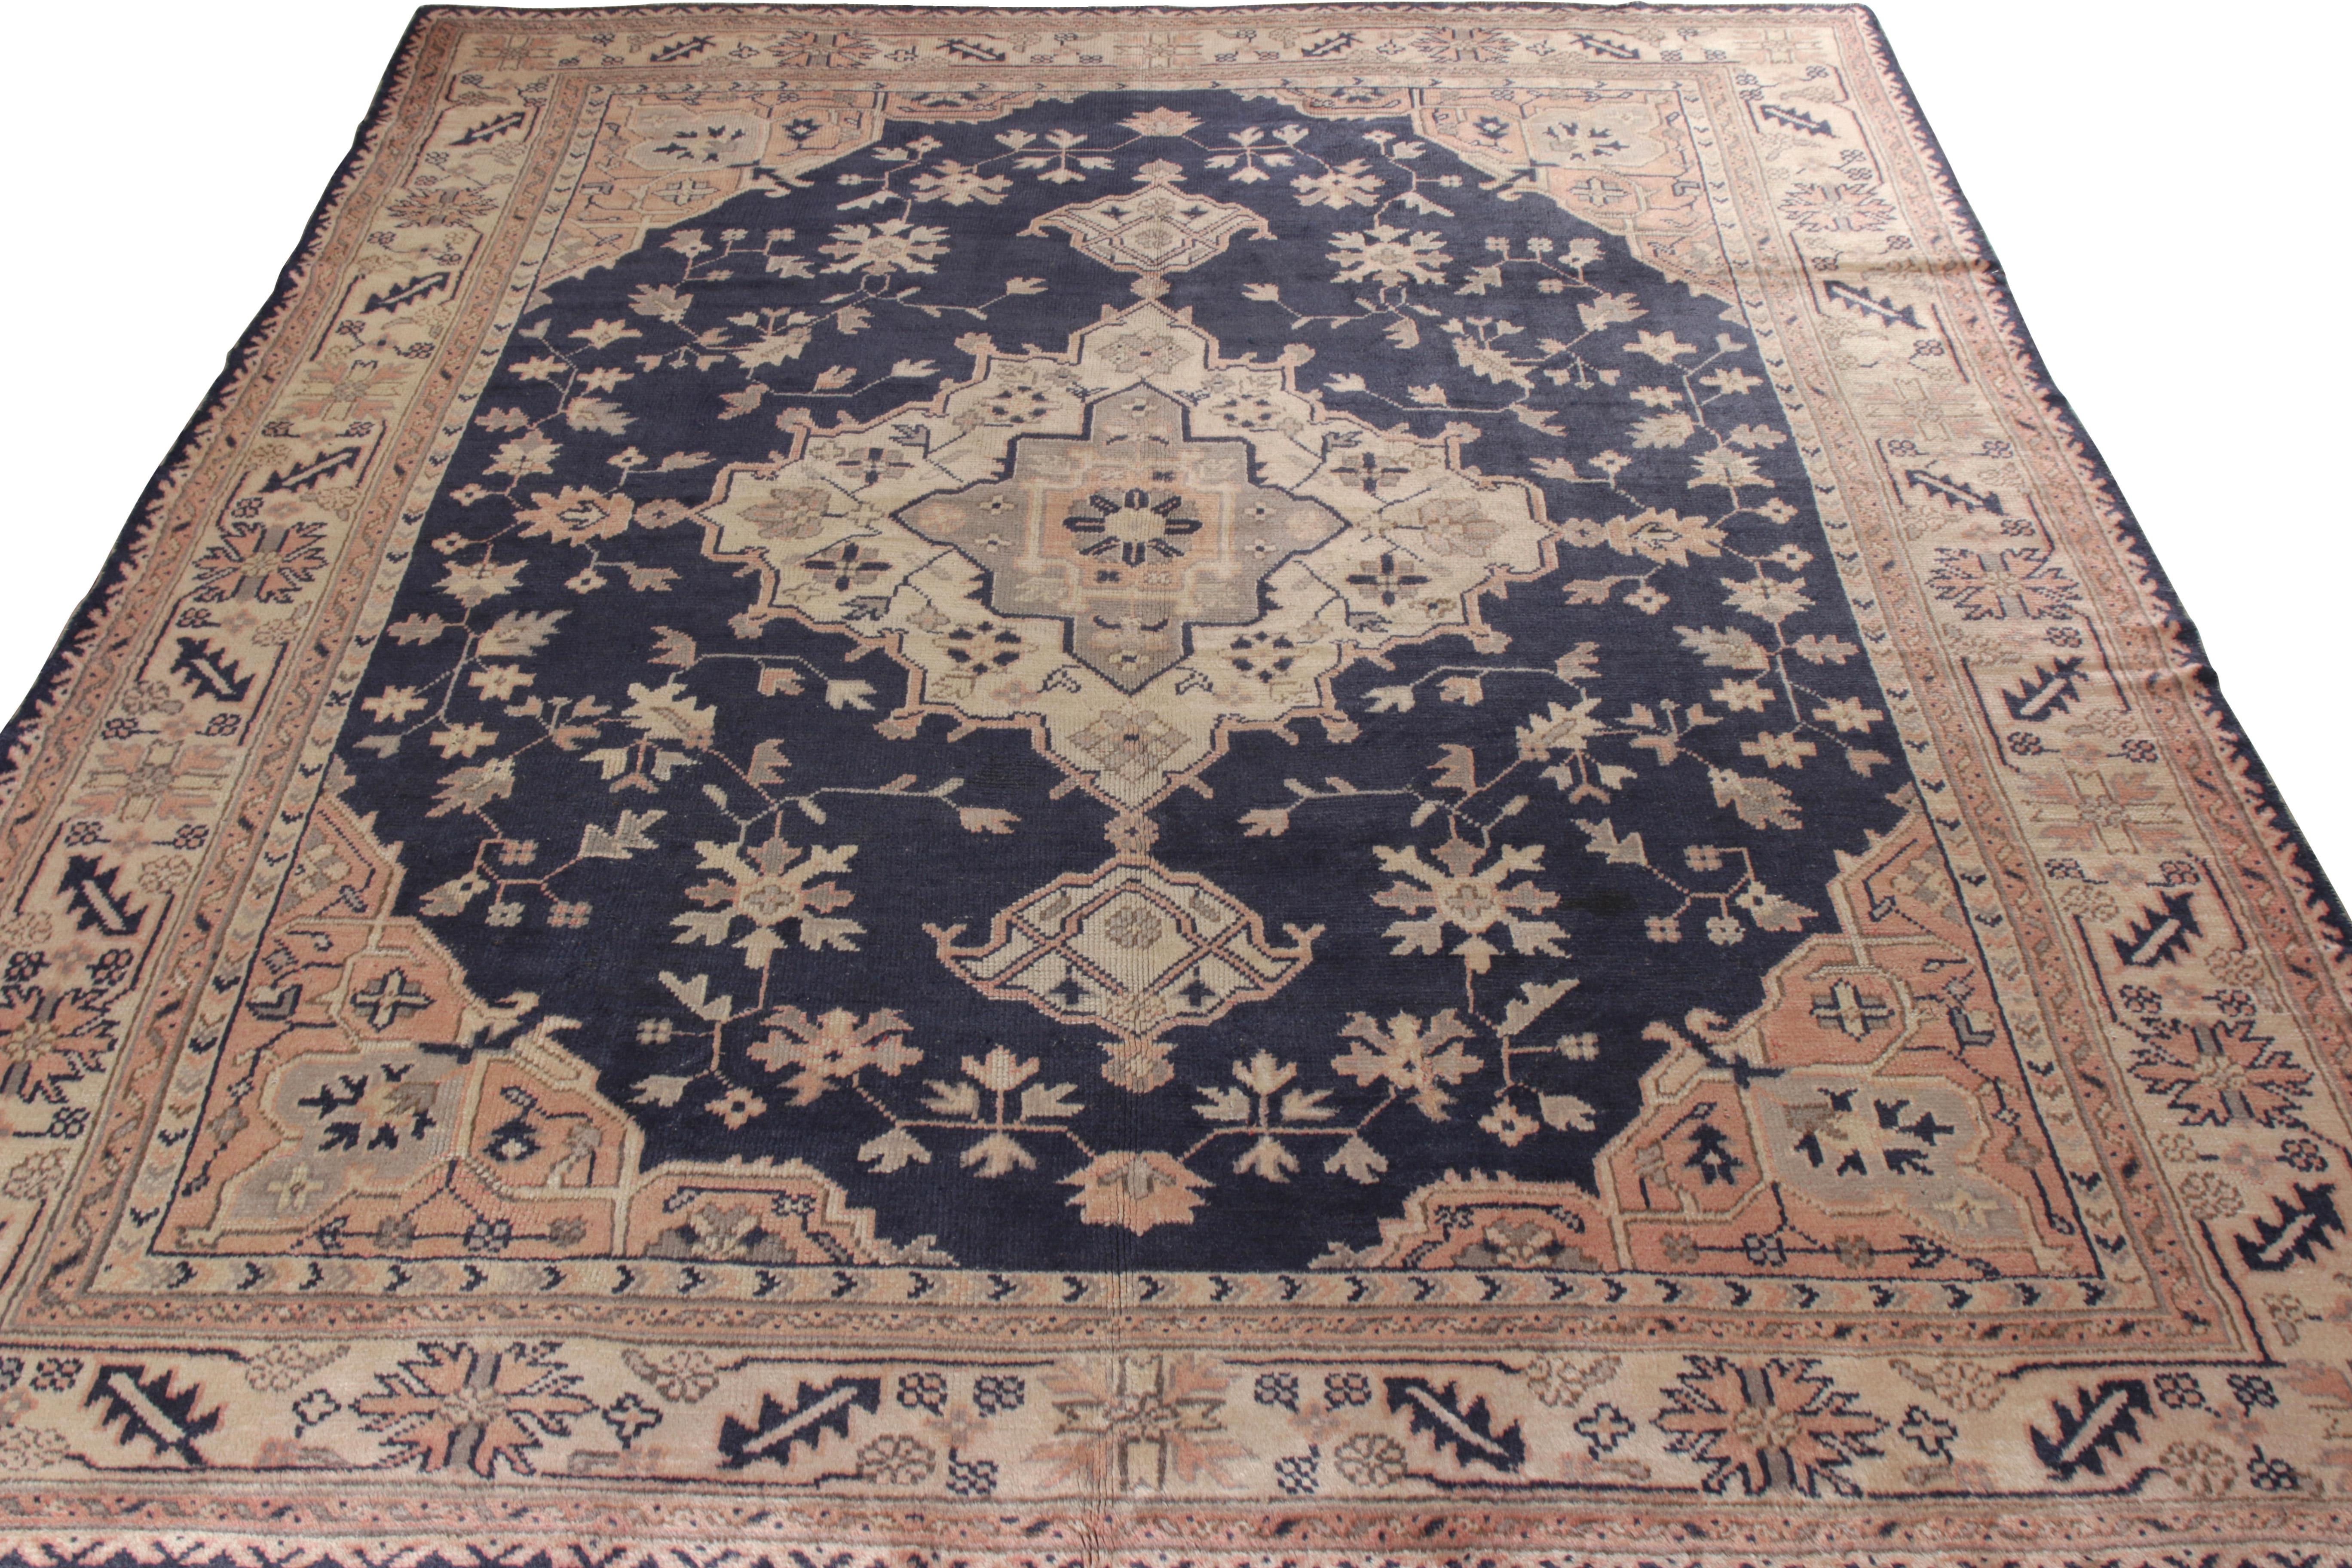 Tapis antique Oushak 8x10 noué à la main, originaire de Turquie vers 1920-1930. Finement tissé en laine, ce tapis enchante l'œil avec un motif médaillon séduisant qui incarne les traits classiques de finesse et d'élégance des Oushak. Ce centre de